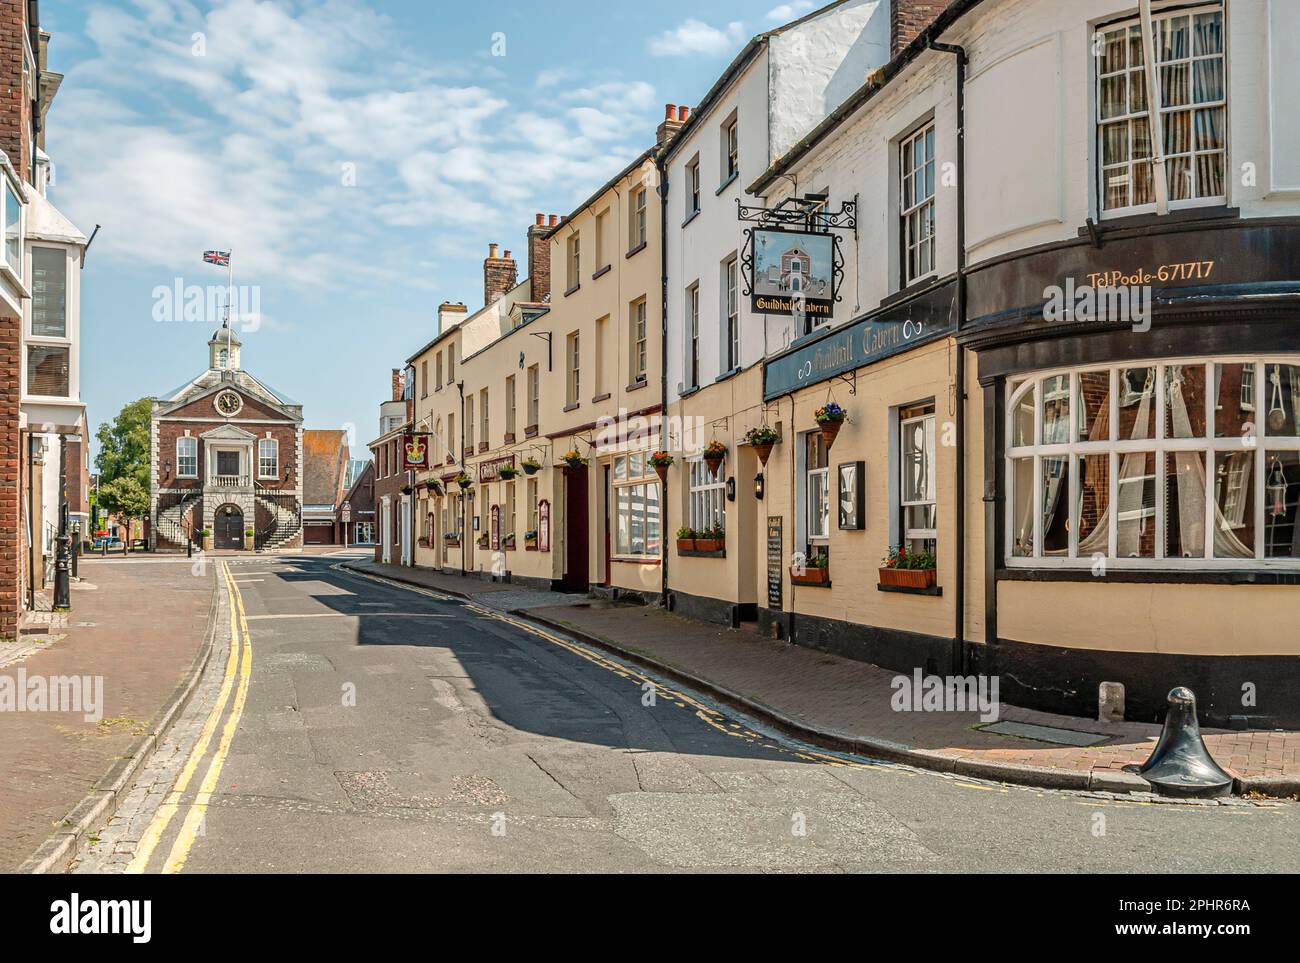 Centre-ville historique de Poole, Dorset, Angleterre, Royaume-Uni Banque D'Images